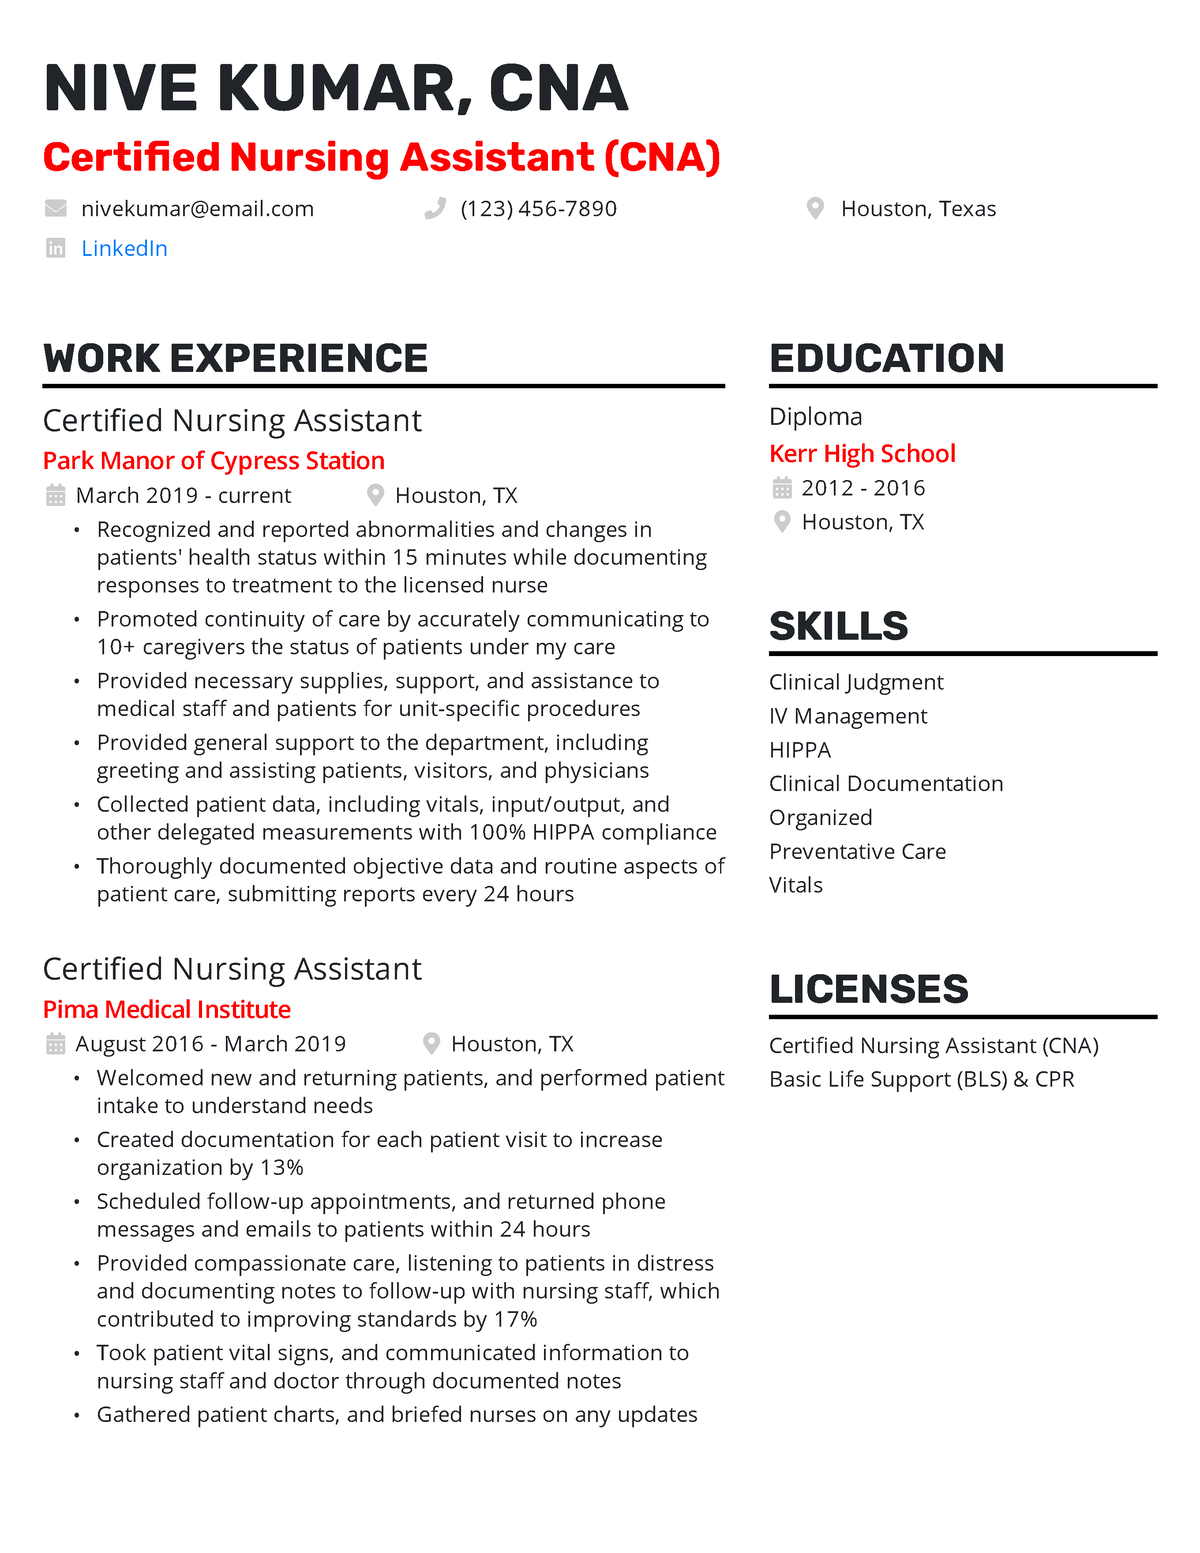 resume job description for certified nursing assistant